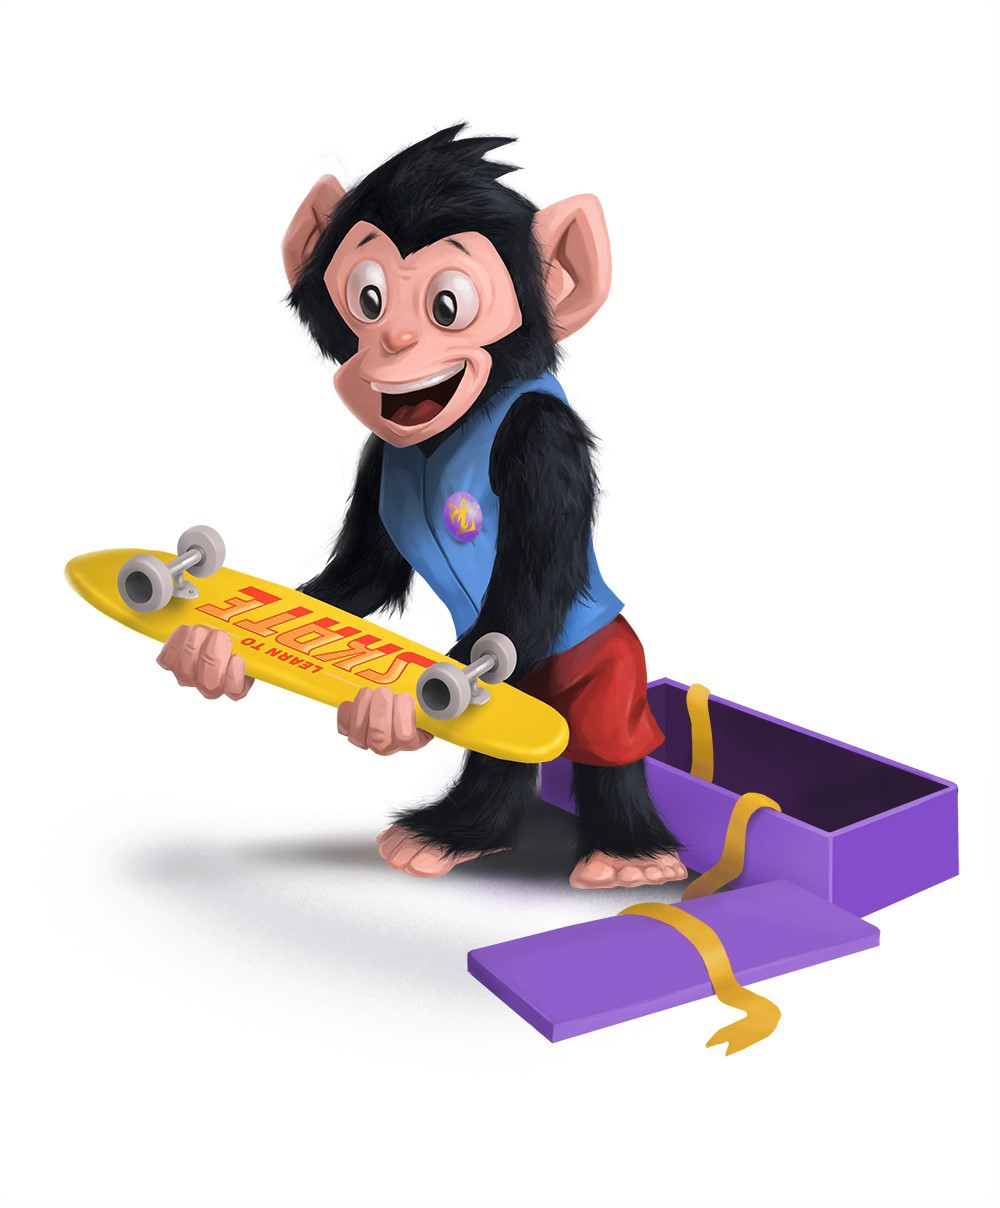 Black monkey in suit opened his skate gift - Digital Painting